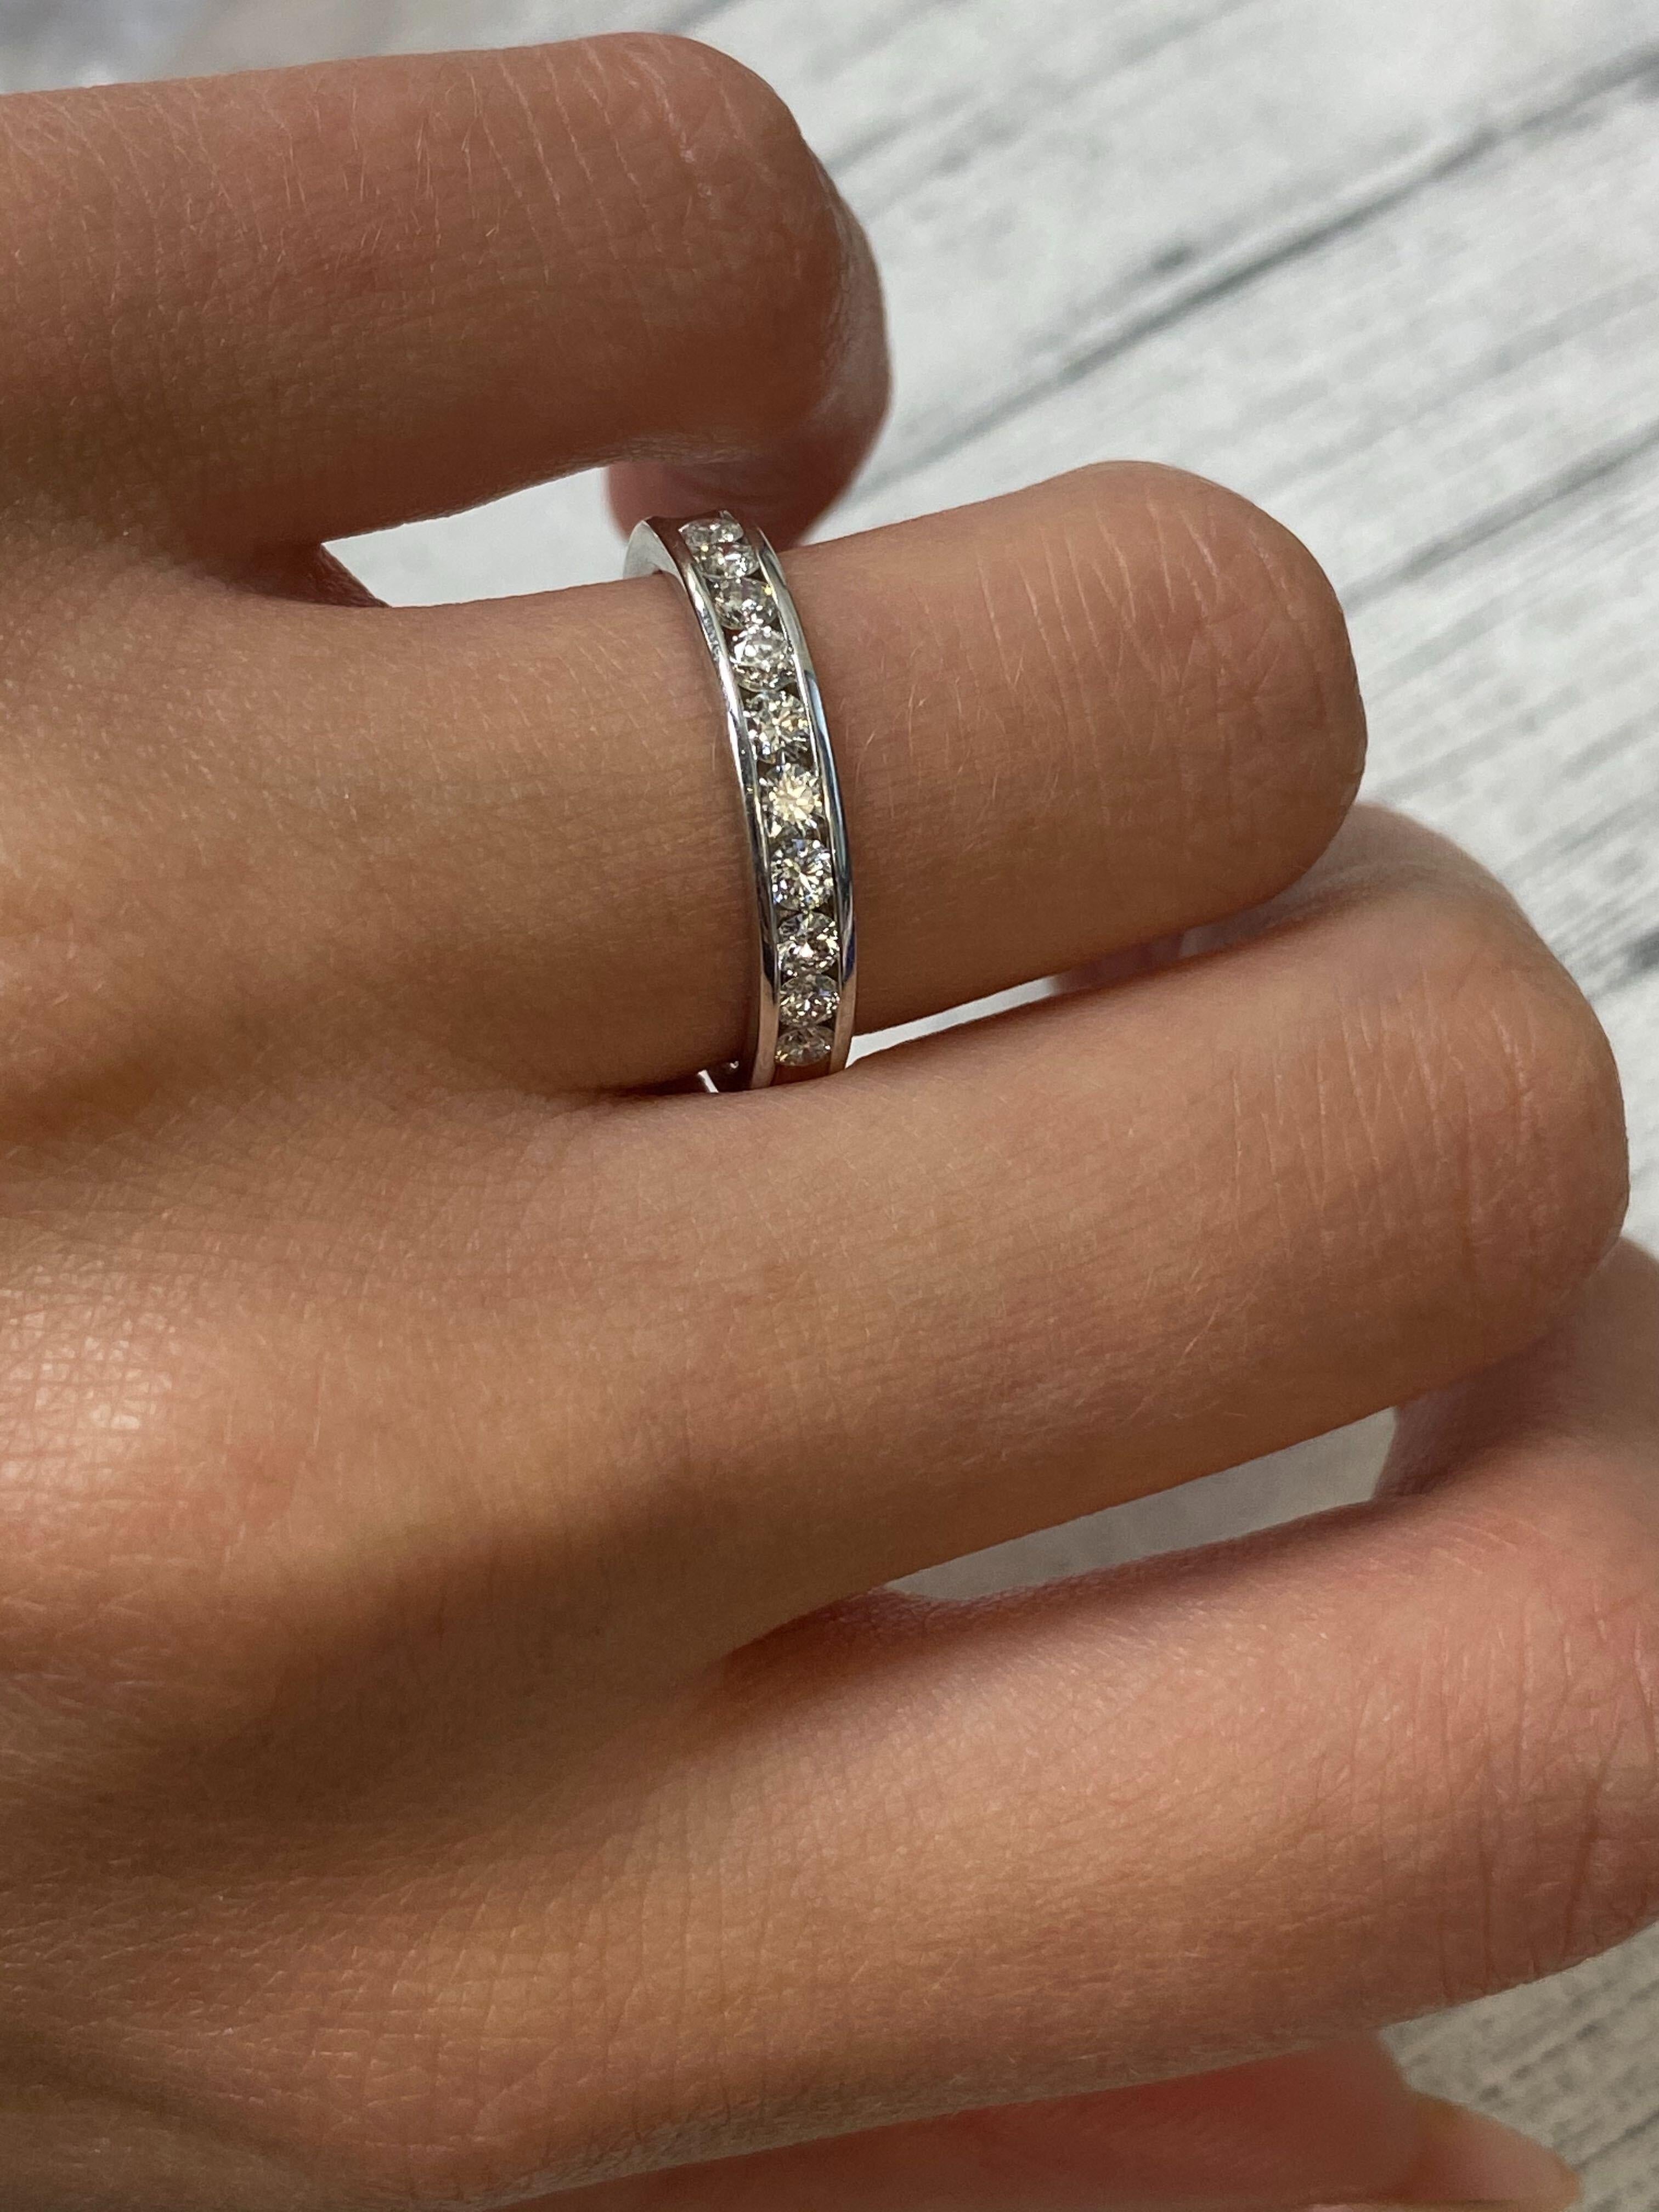 Rachel Koen Channel Set Diamond Wedding Band Ring 14k White Gold 0.50cttw For Sale 1